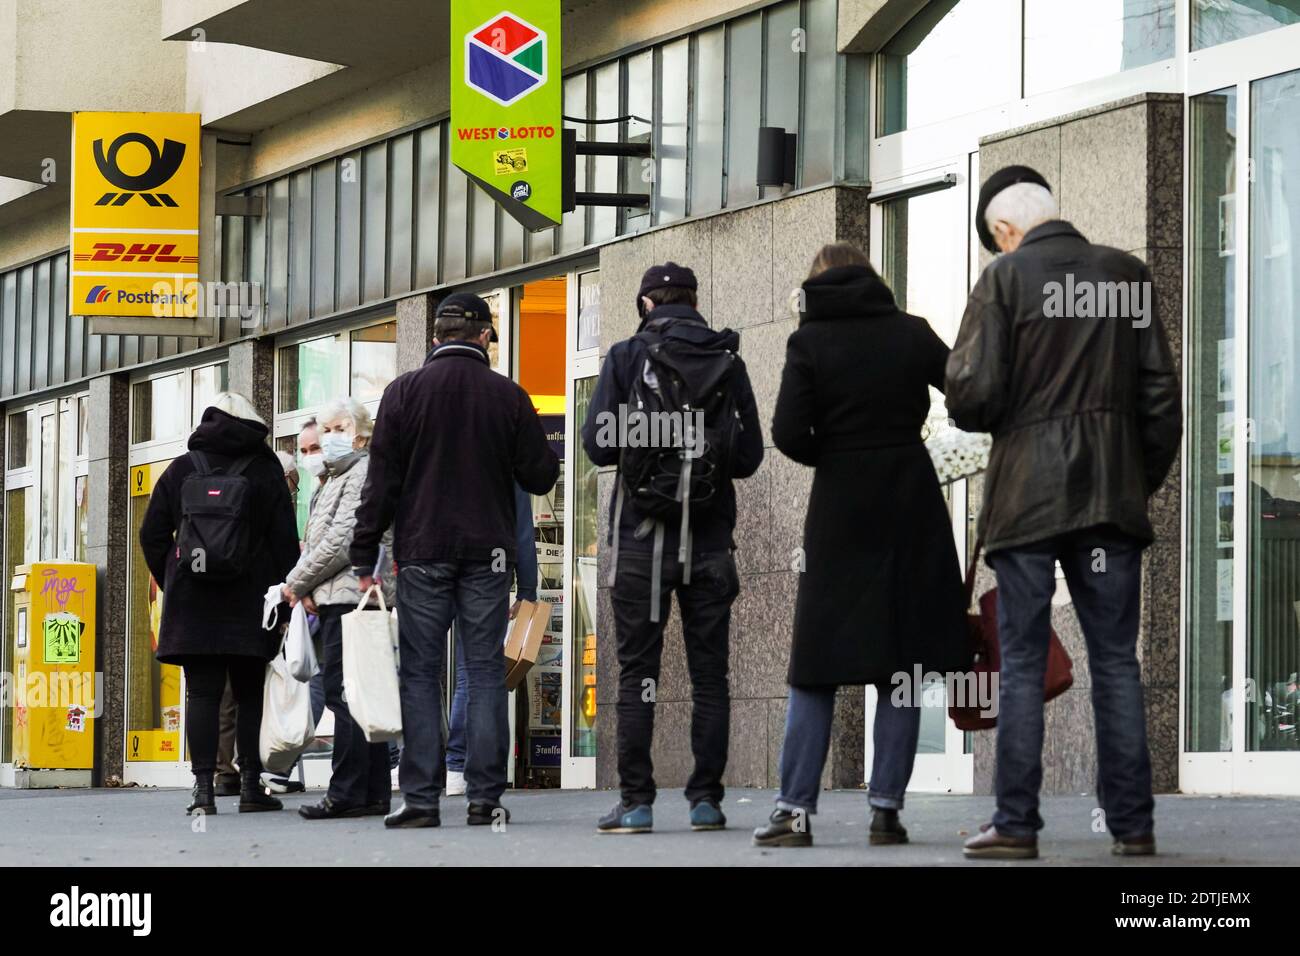 Dortmund, Allemagne, 18 décembre 2020: Les clients attendent sur le trottoir devant une succursale de Deutsche Post / DHL à Dortmund. En raison des restrictions du deuxième verrouillage de la pandémie de corona, seuls 3 clients sont autorisés à rester dans cette succursale en même temps. Banque D'Images